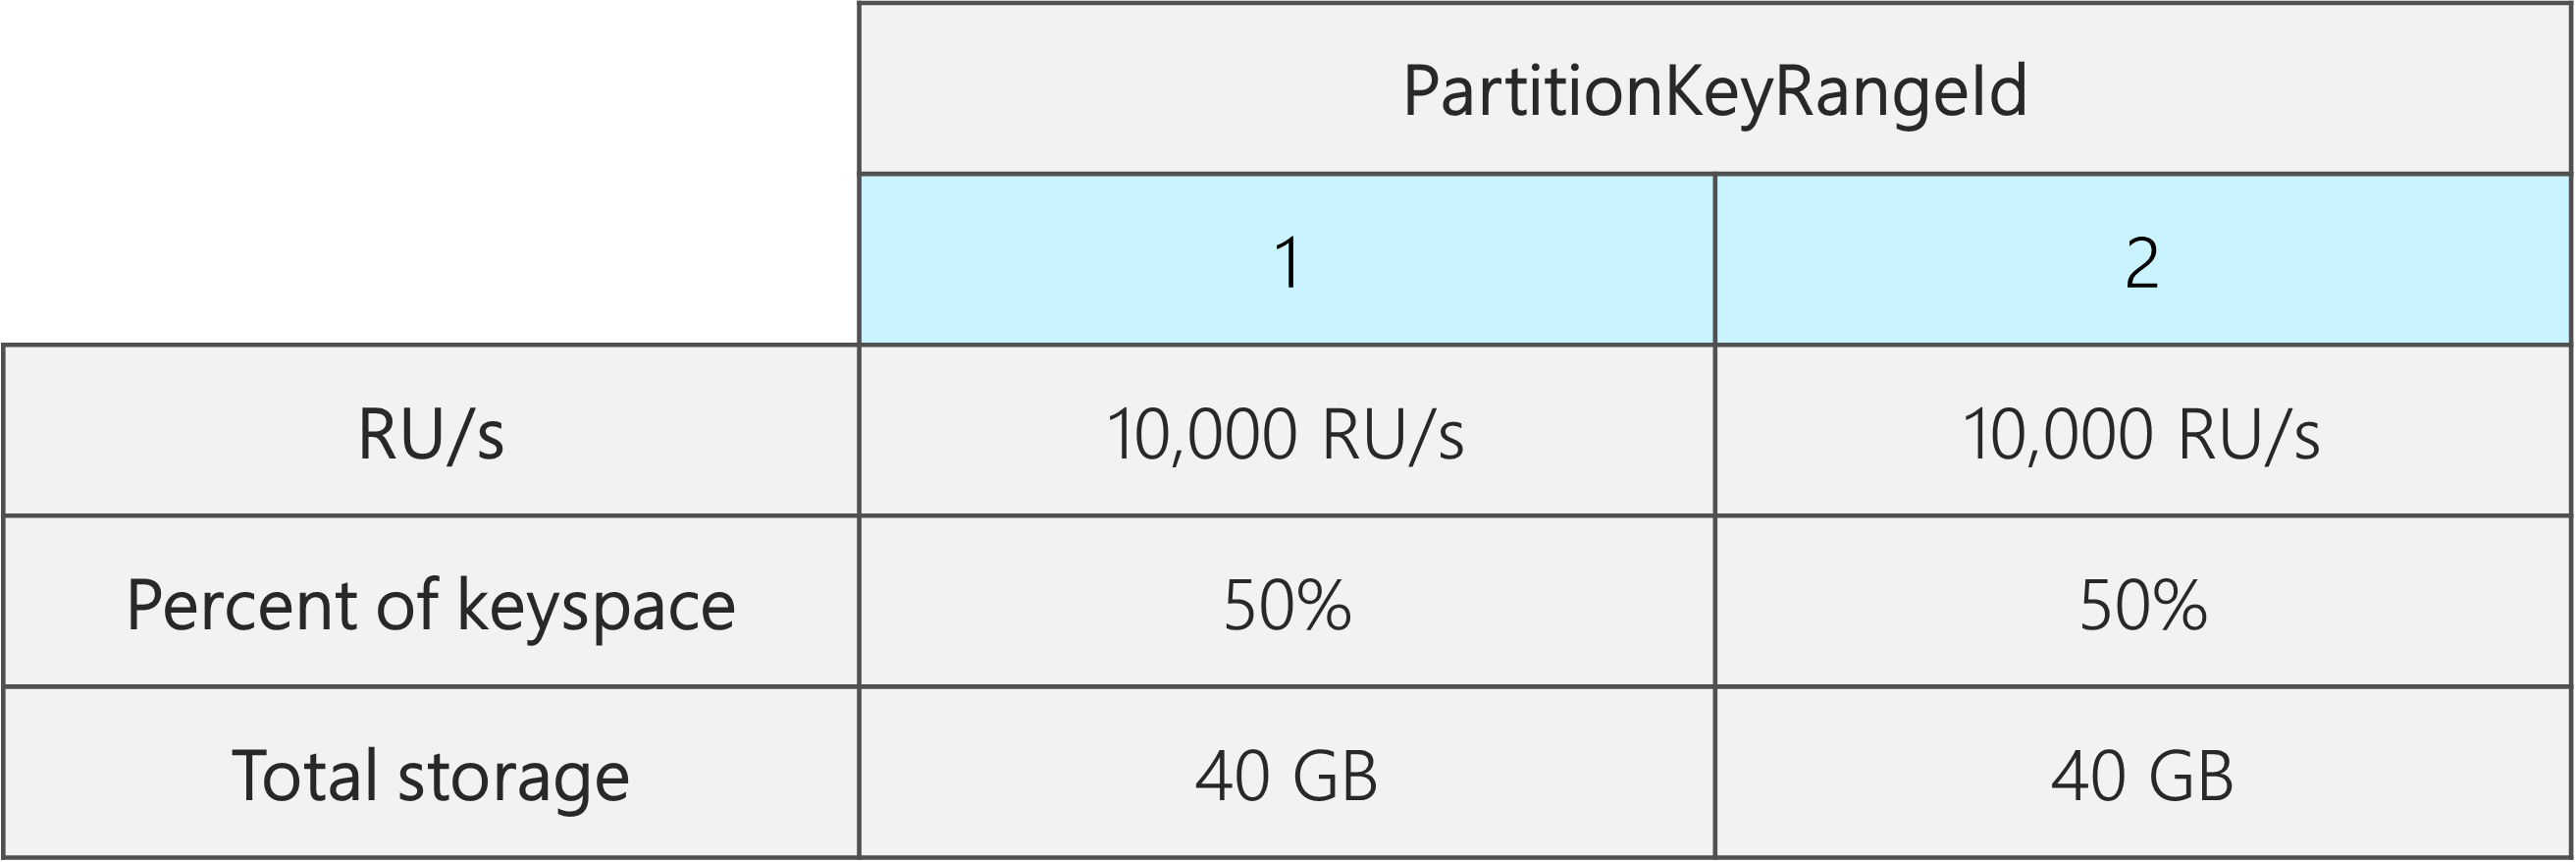 2 つの PartitionKeyRangeId (それぞれ 10,000 RU/秒、40 GB で、合計キースペースの 50%)